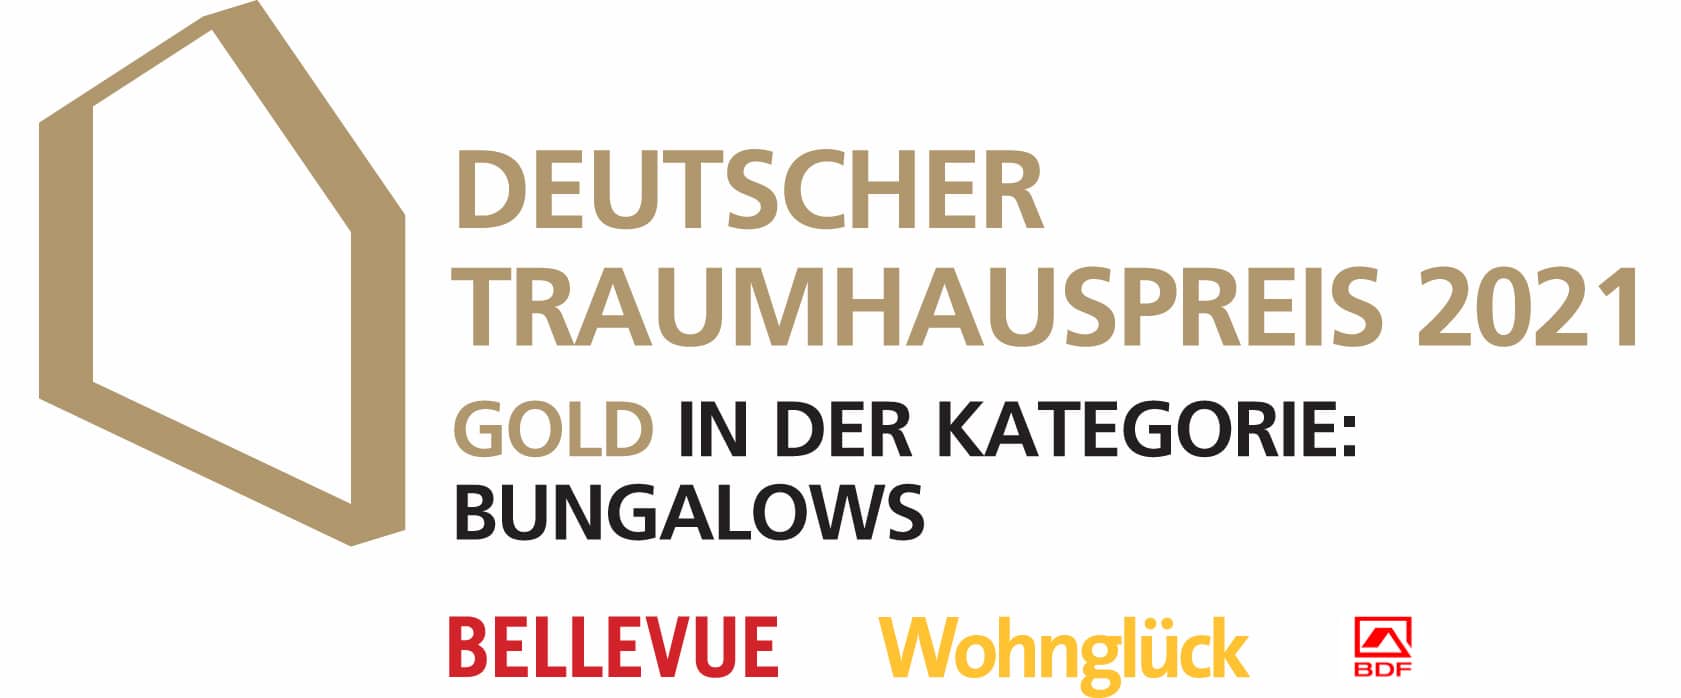 Deutscher Traumhauspreis 2021 Bungalow Seiler von Fertighaus WEISS